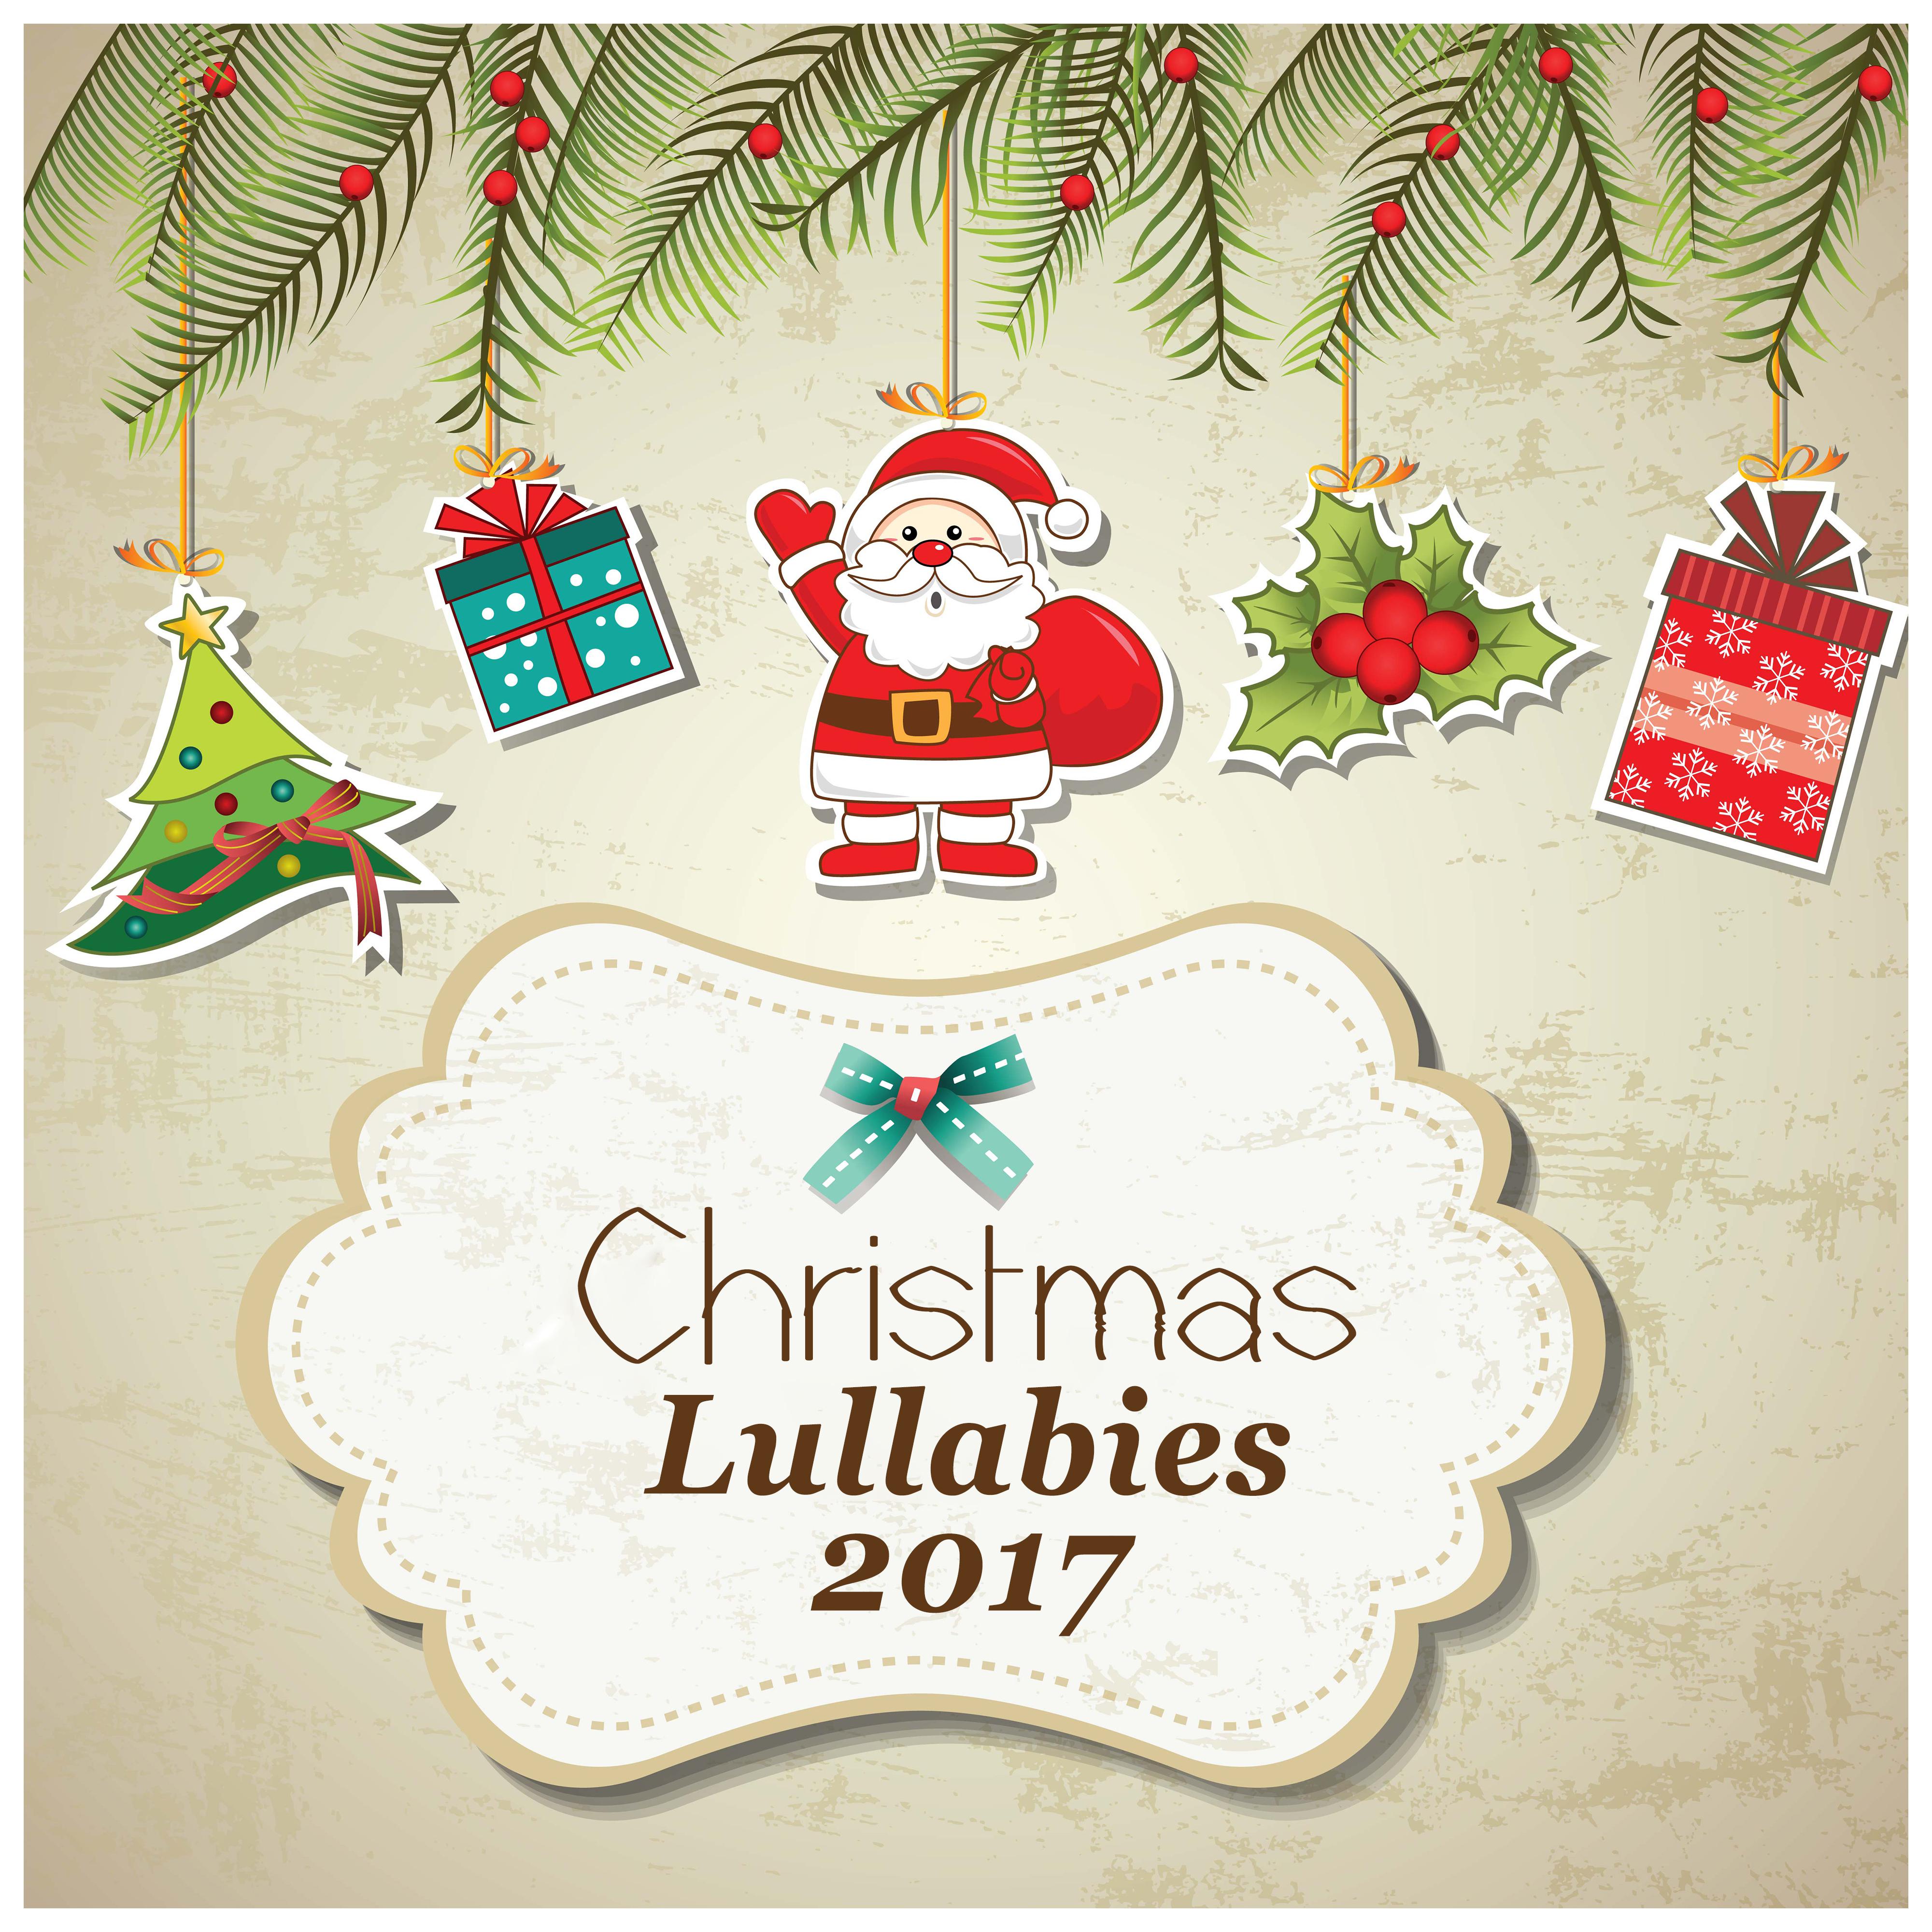 Christmas Lullabies 2017